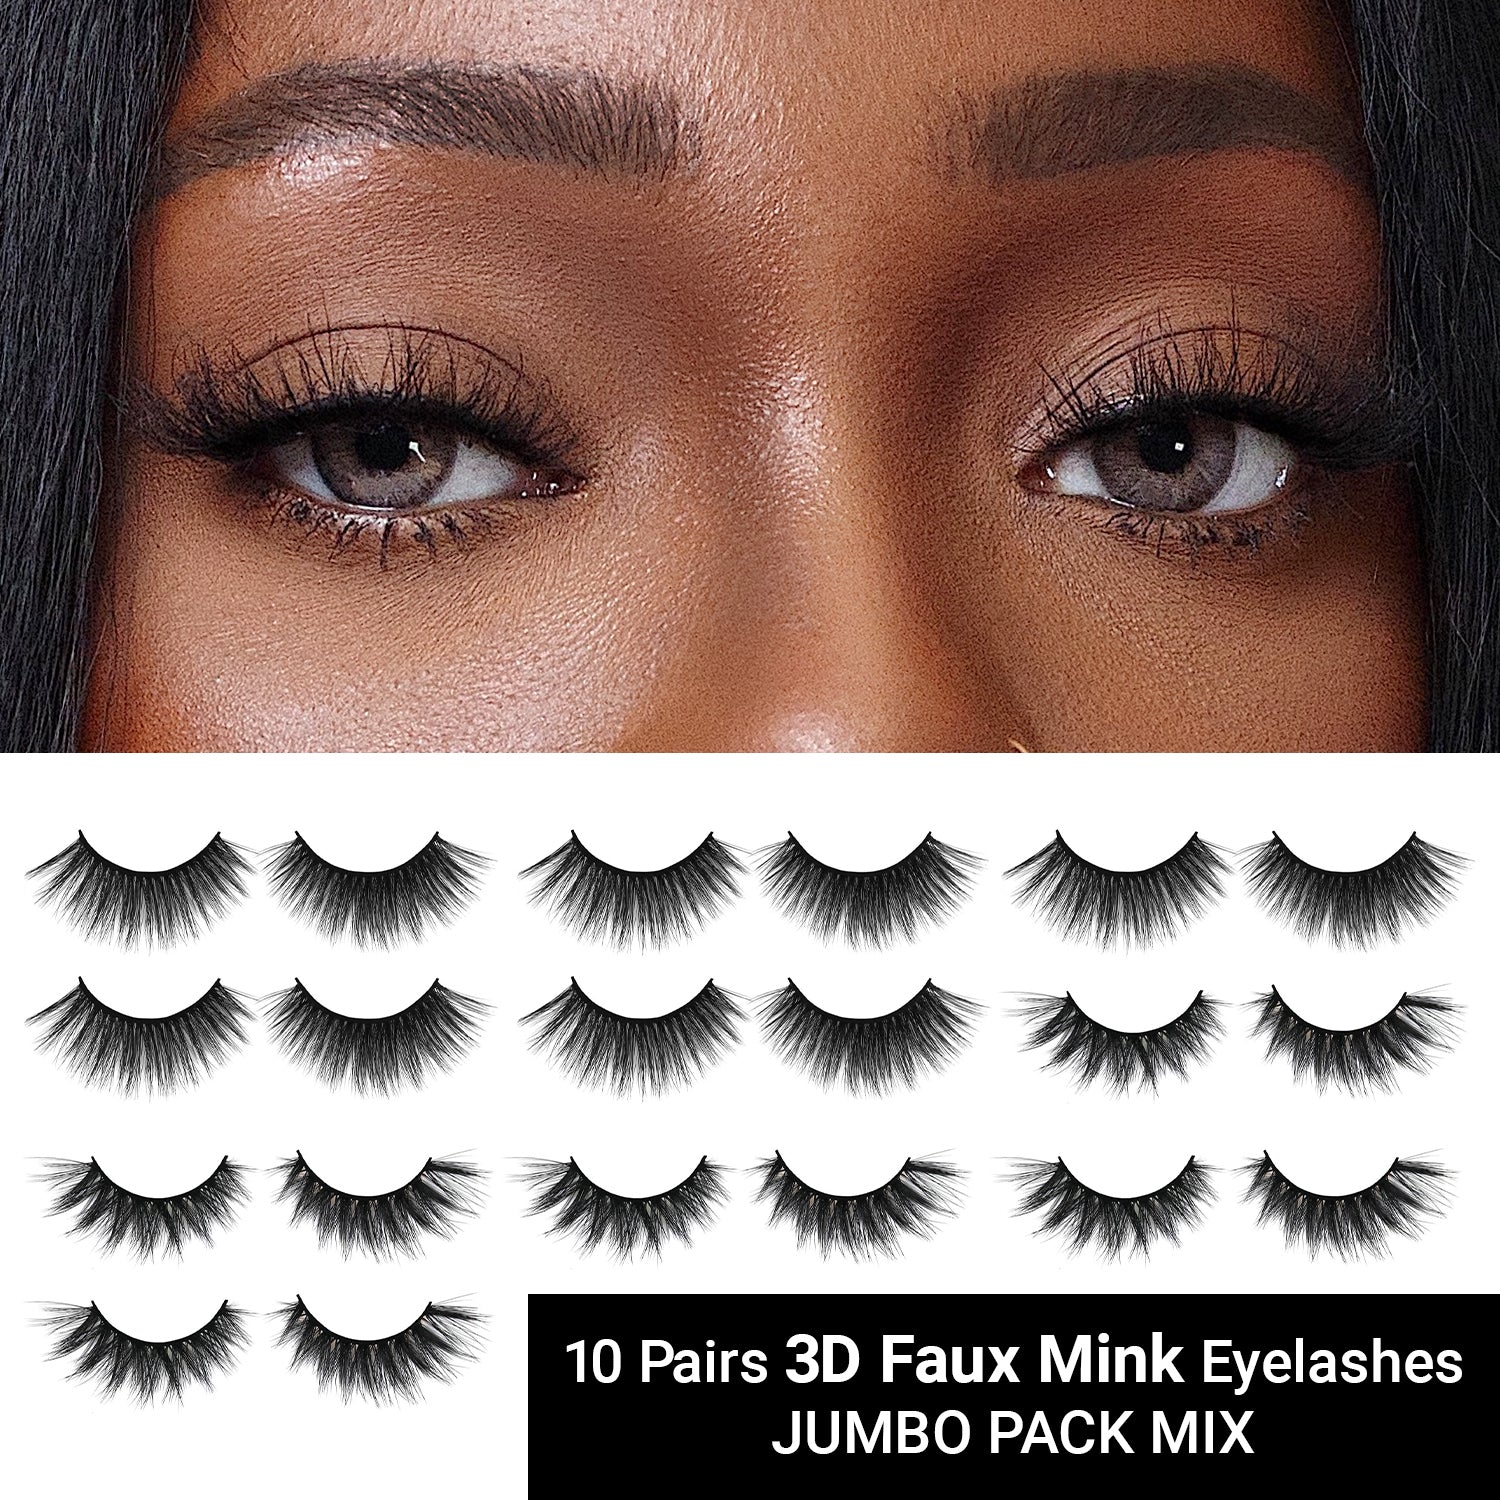 3D Faux Mink Eyelashes Jumbo Pack Mix 10 Pairs